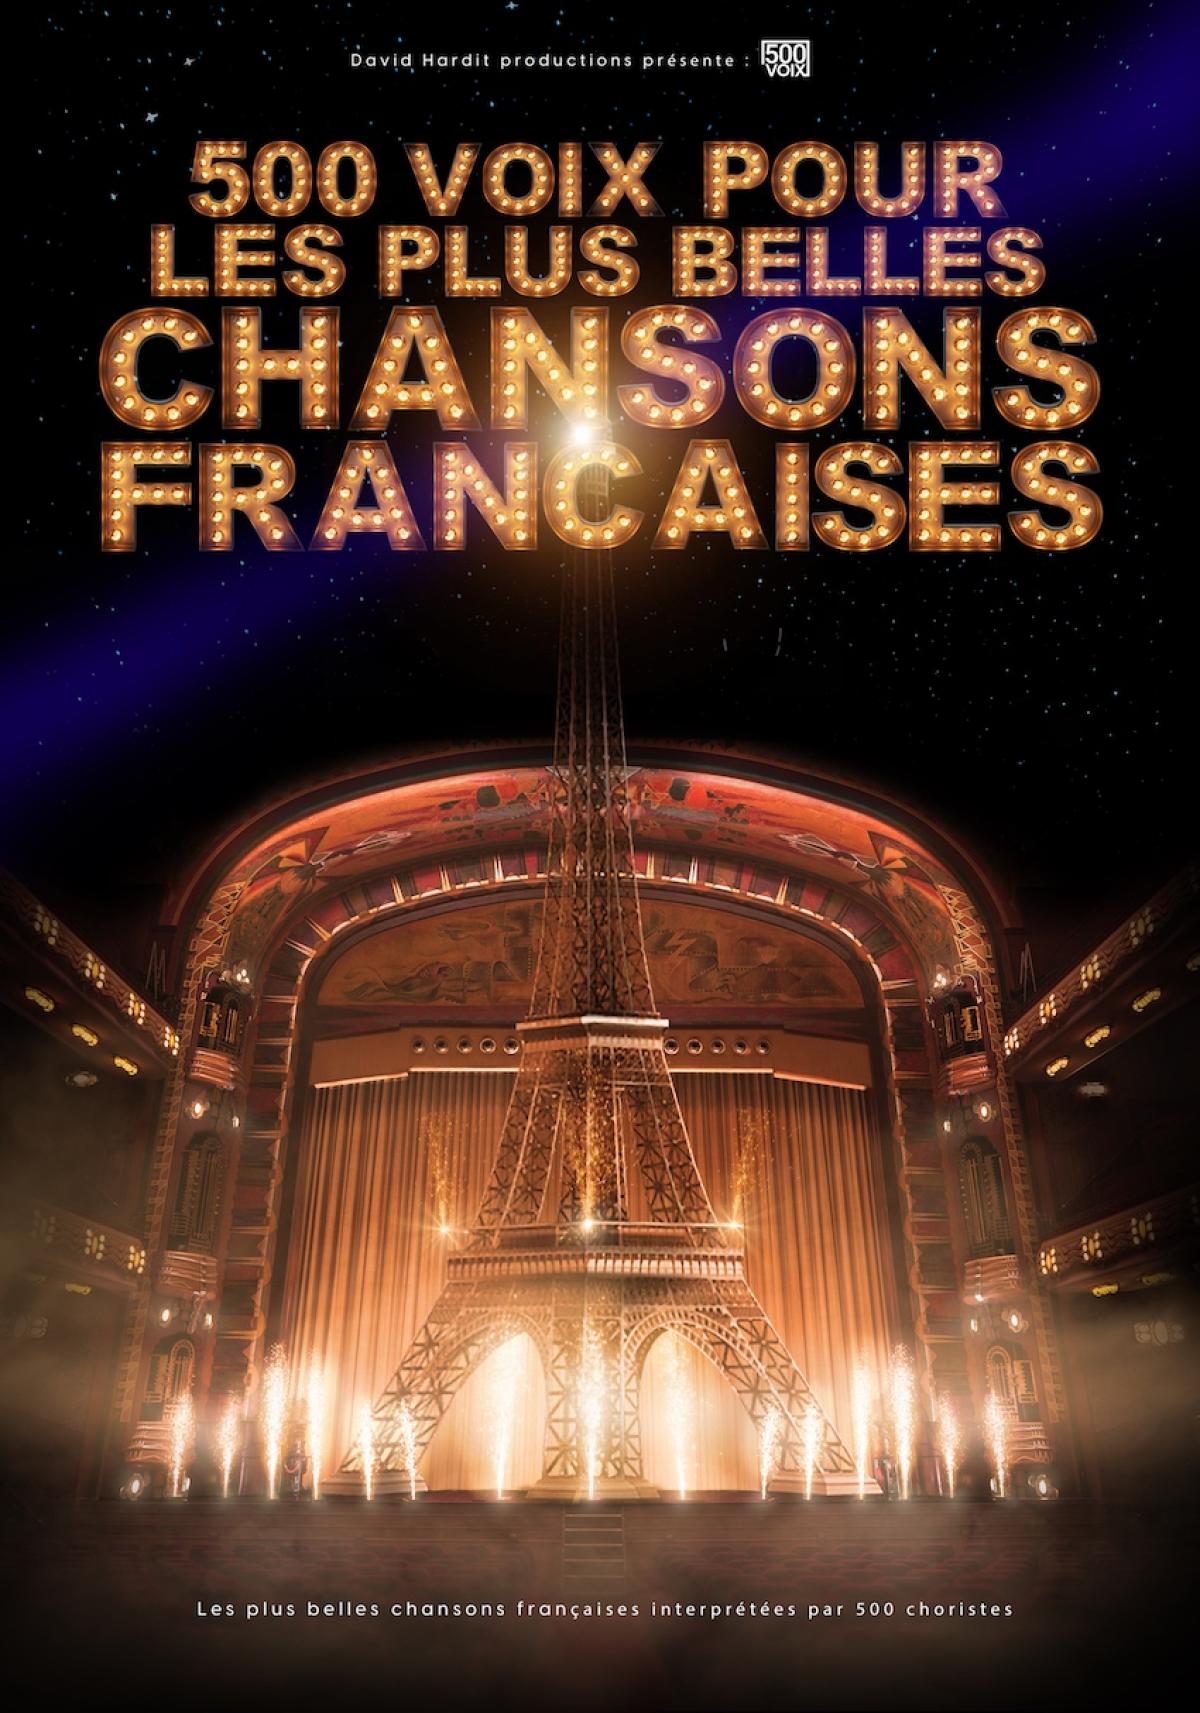 500 Voix Pour Les Plus Belles Chansons al Glaz Arena Tickets